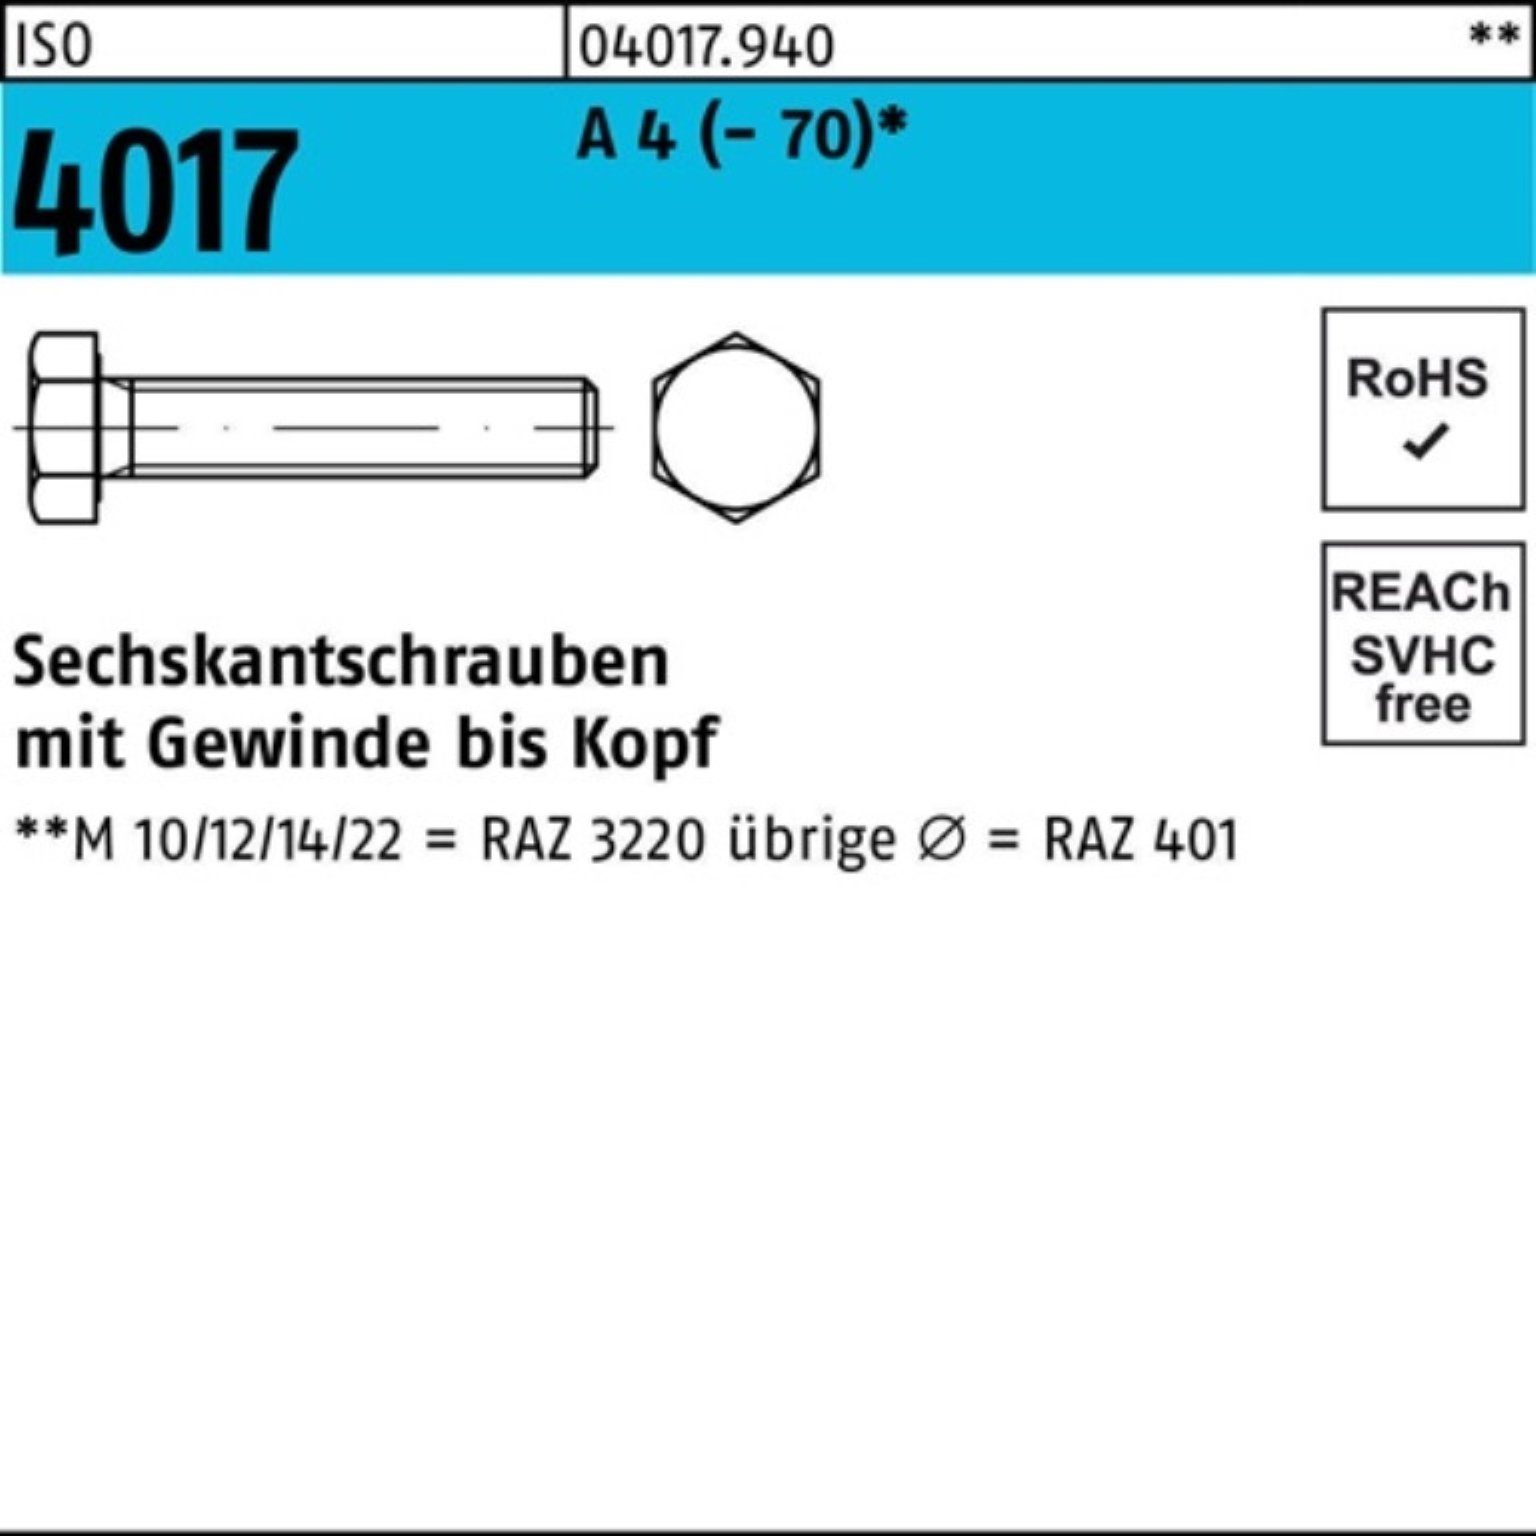 Bufab Sechskantschraube 100er Pack Sechskantschraube ISO 4017 VG M18x 75 A 4 (70) 1 Stück I